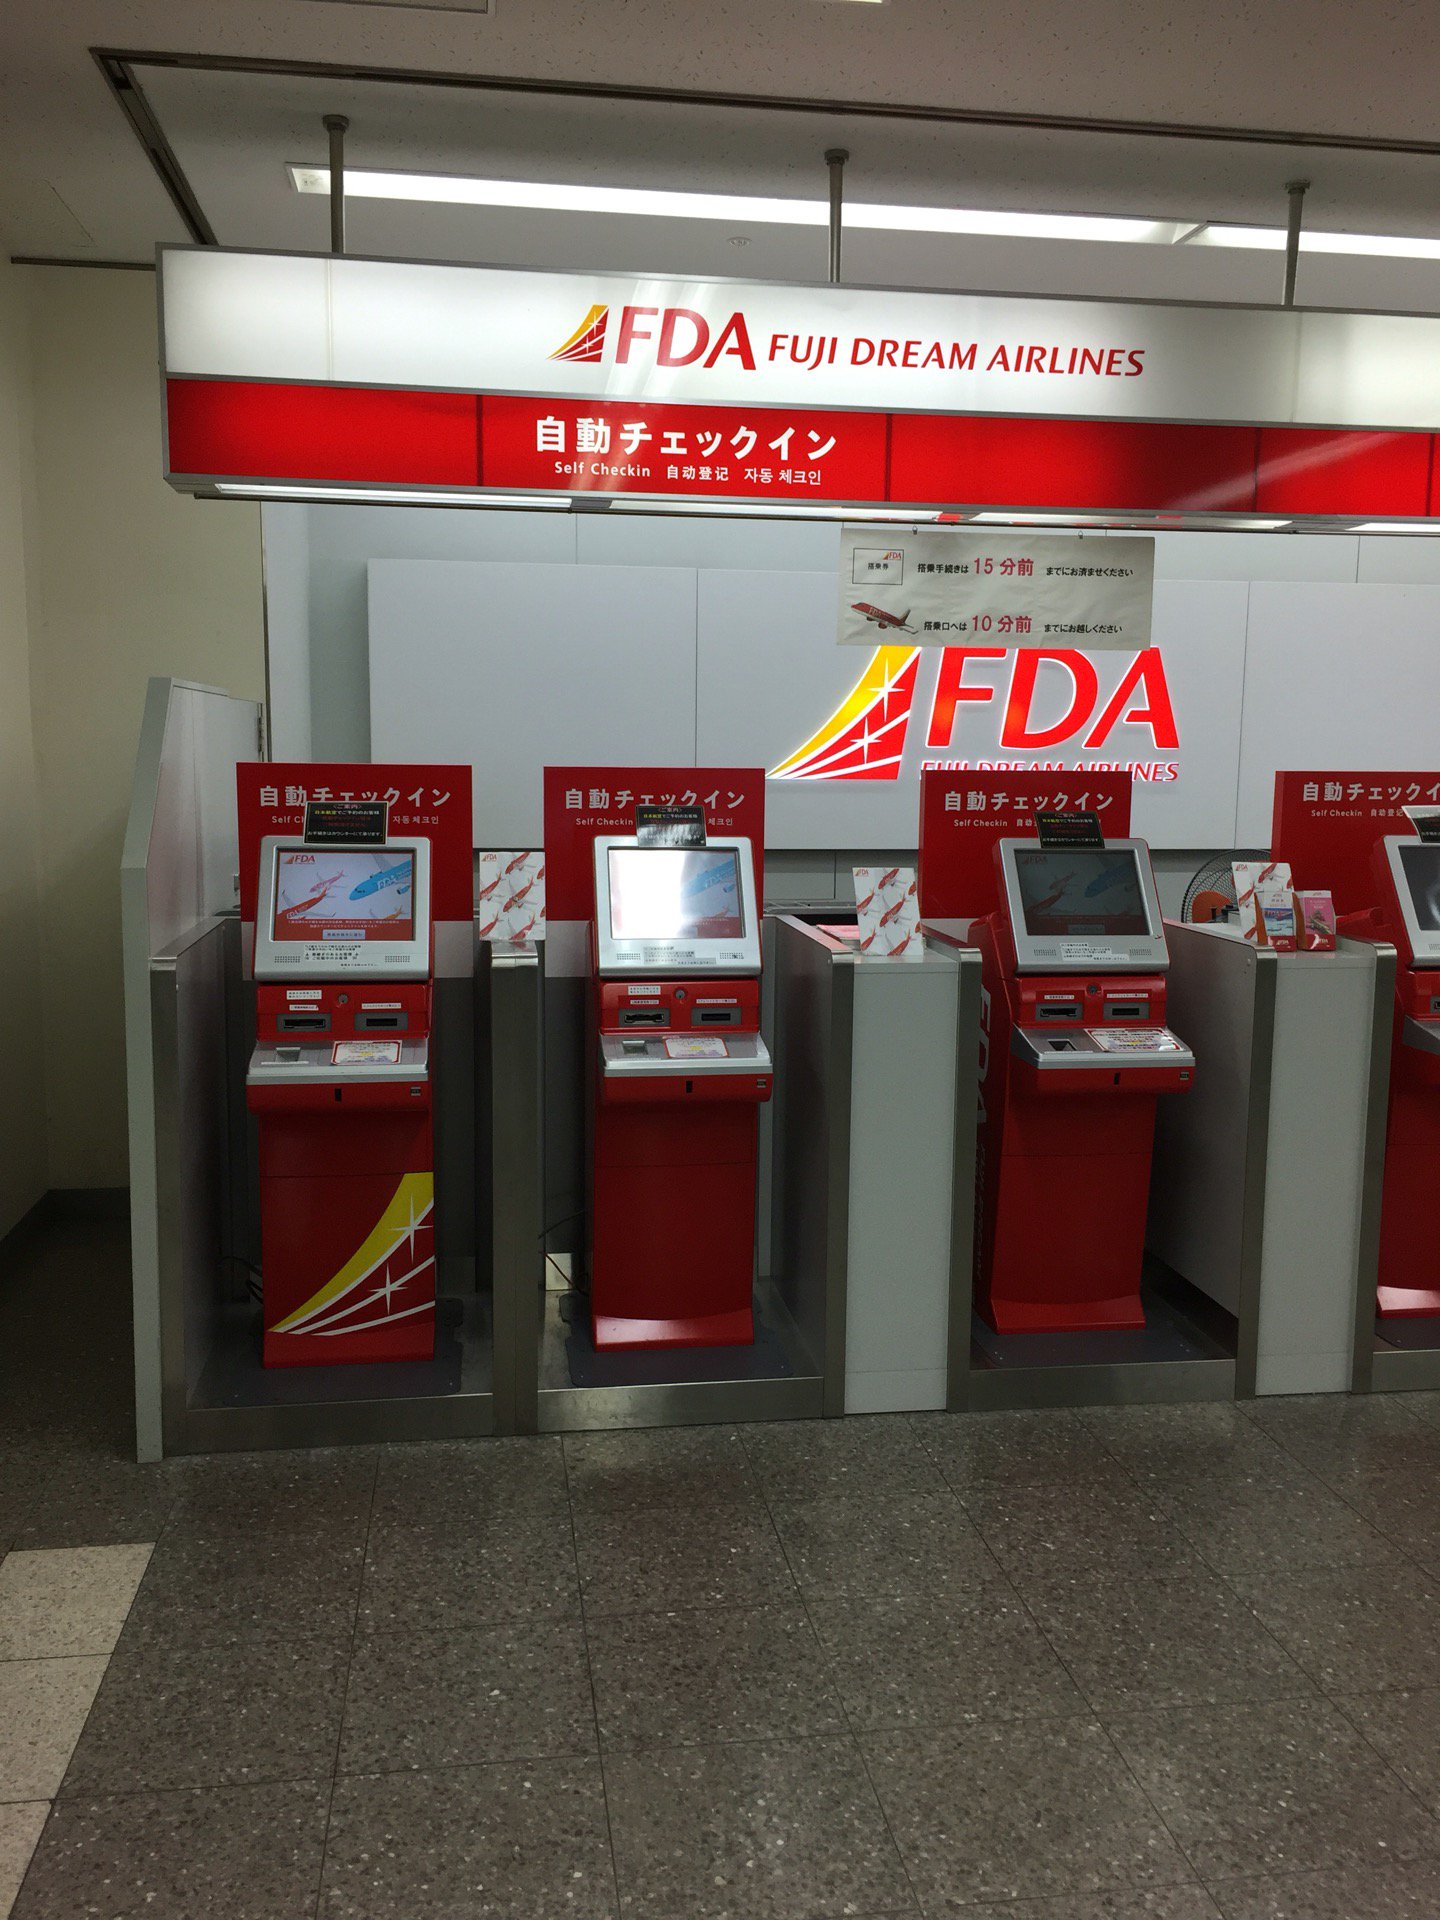 FDA 自動チェックイン機。 (@ 県営名古屋空港 / 小牧空港 in 豊山町, 愛知県)  